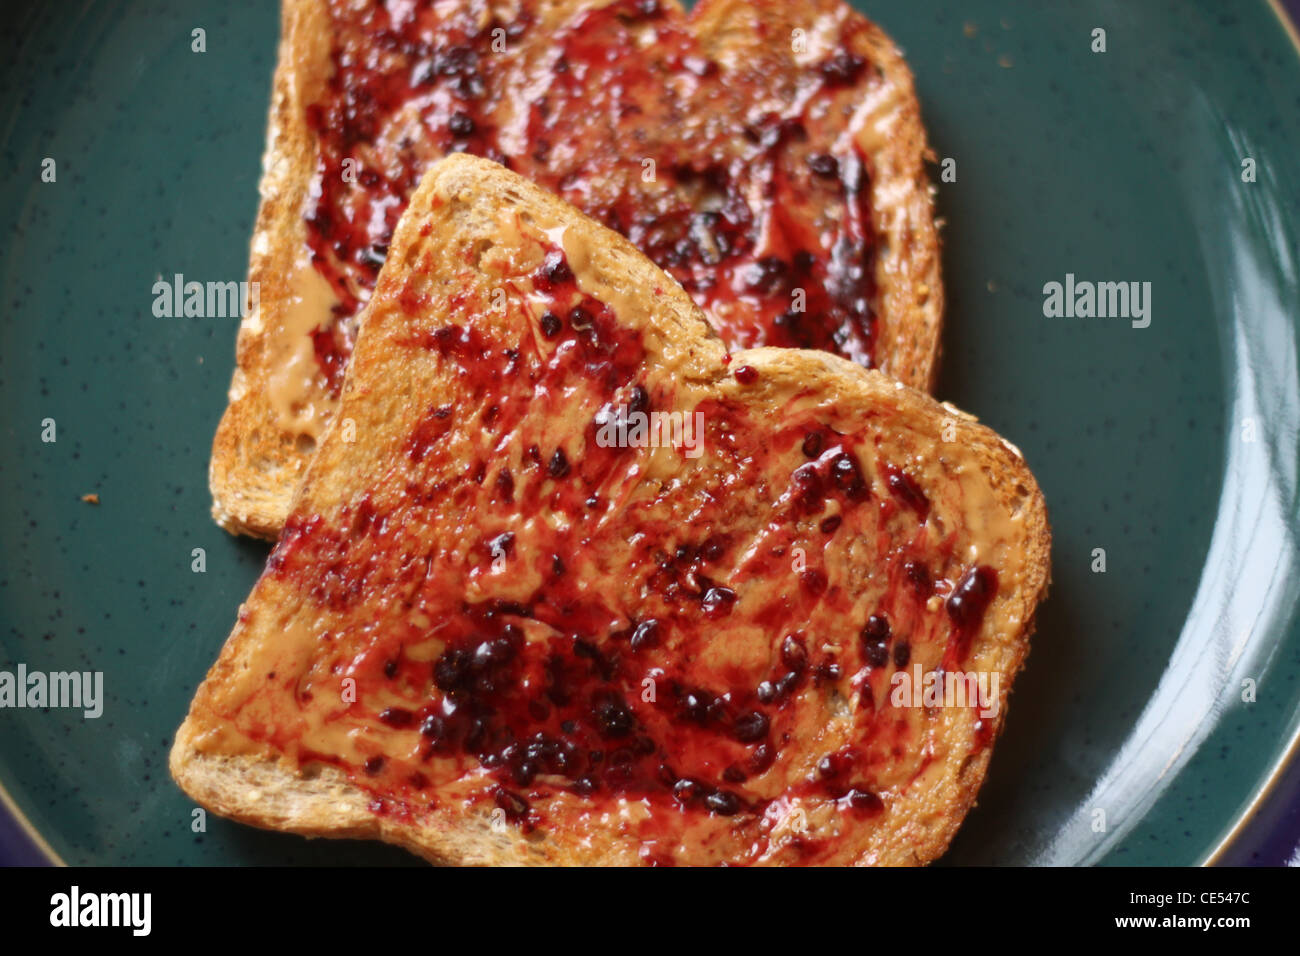 Cara abierta de mantequilla de maní y mermelada trigo tostada sobre una placa verde Foto de stock